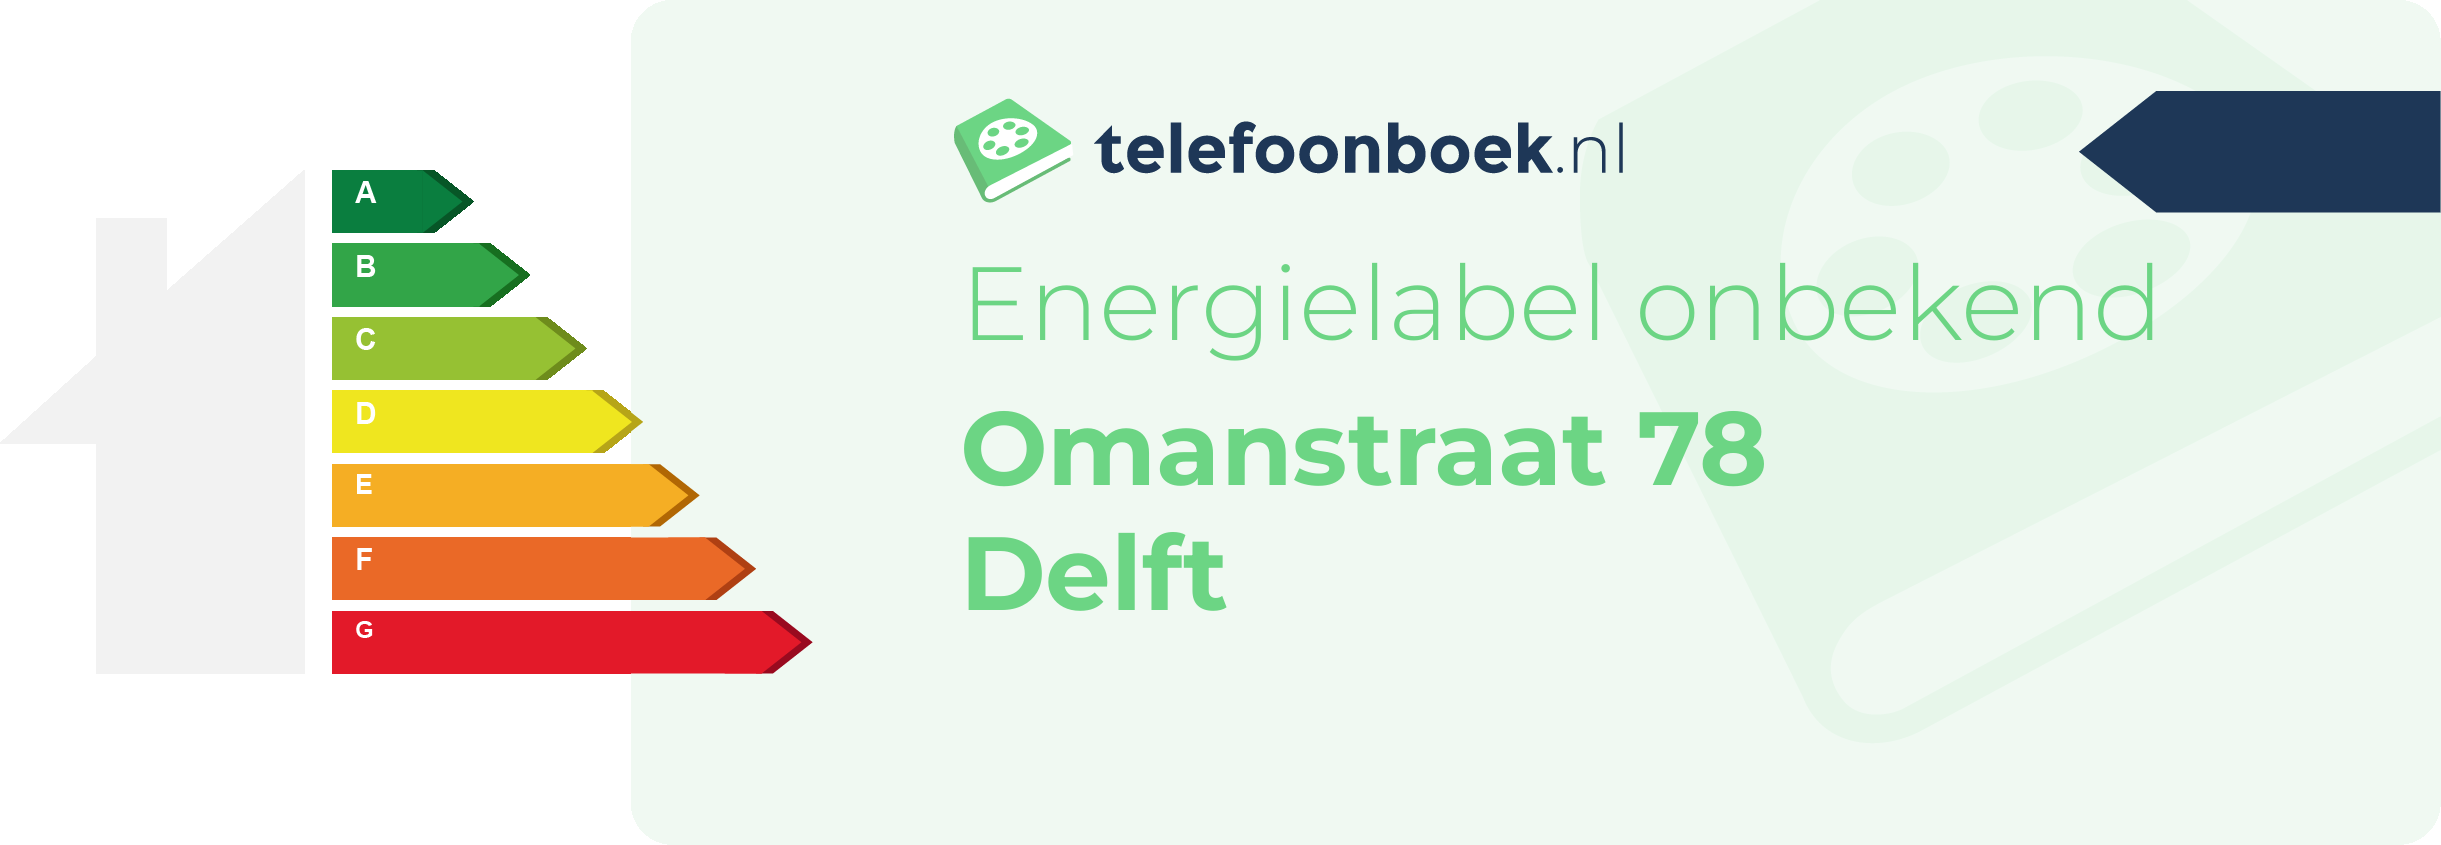 Energielabel Omanstraat 78 Delft